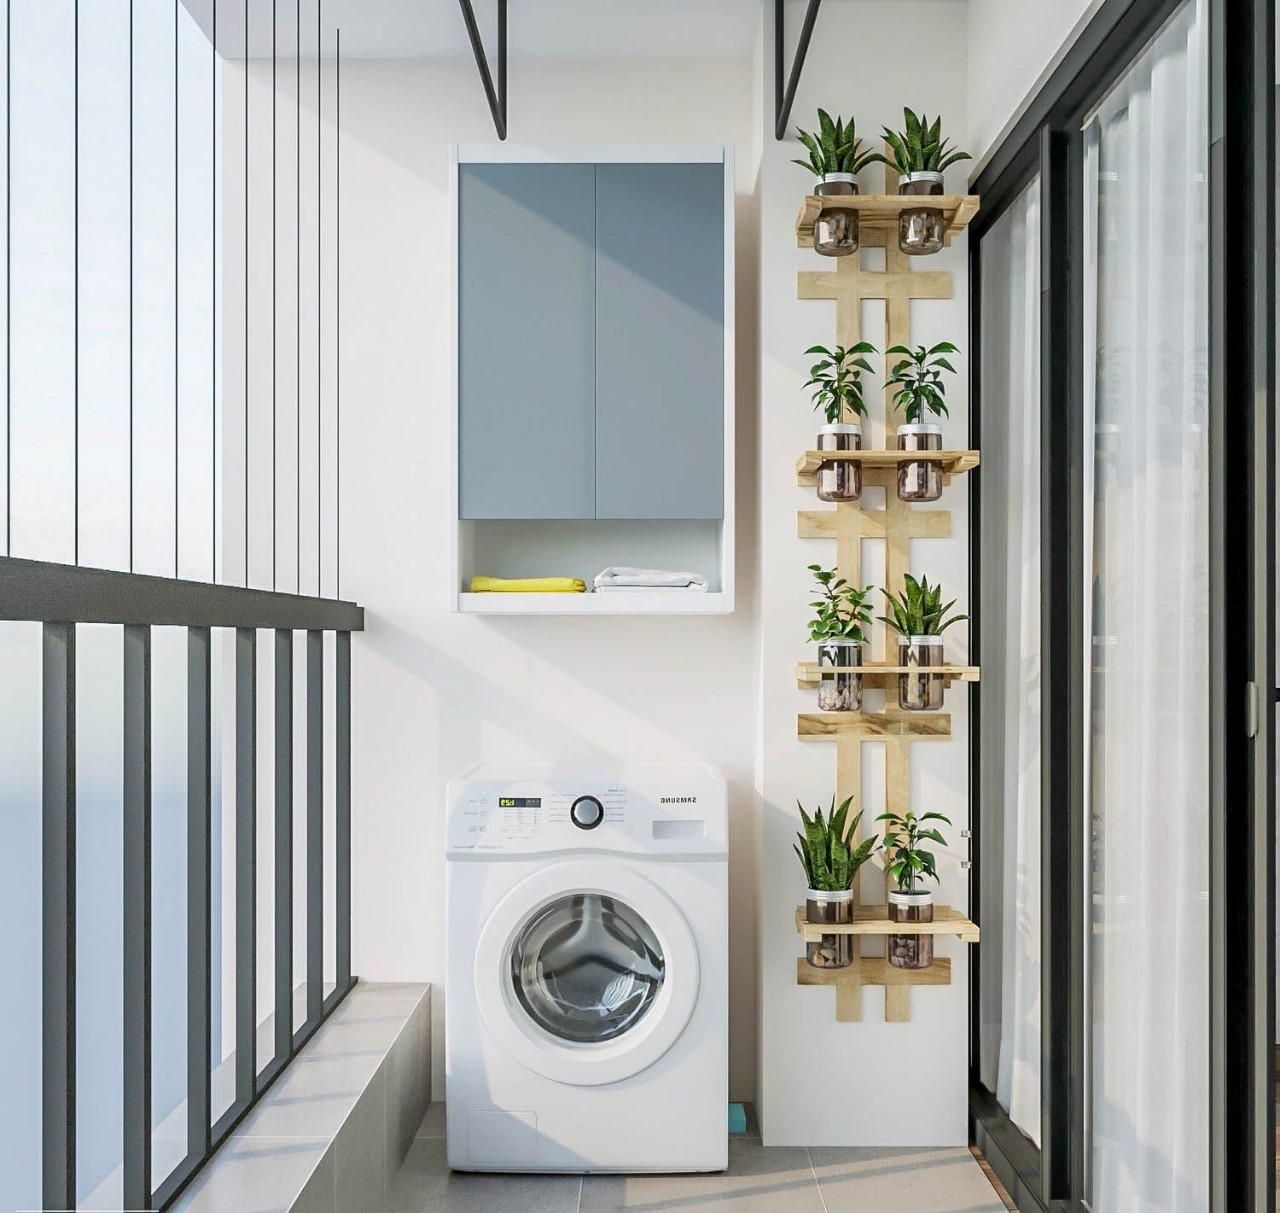 Thiết kế ban công chung cư có chỗ để máy giặt